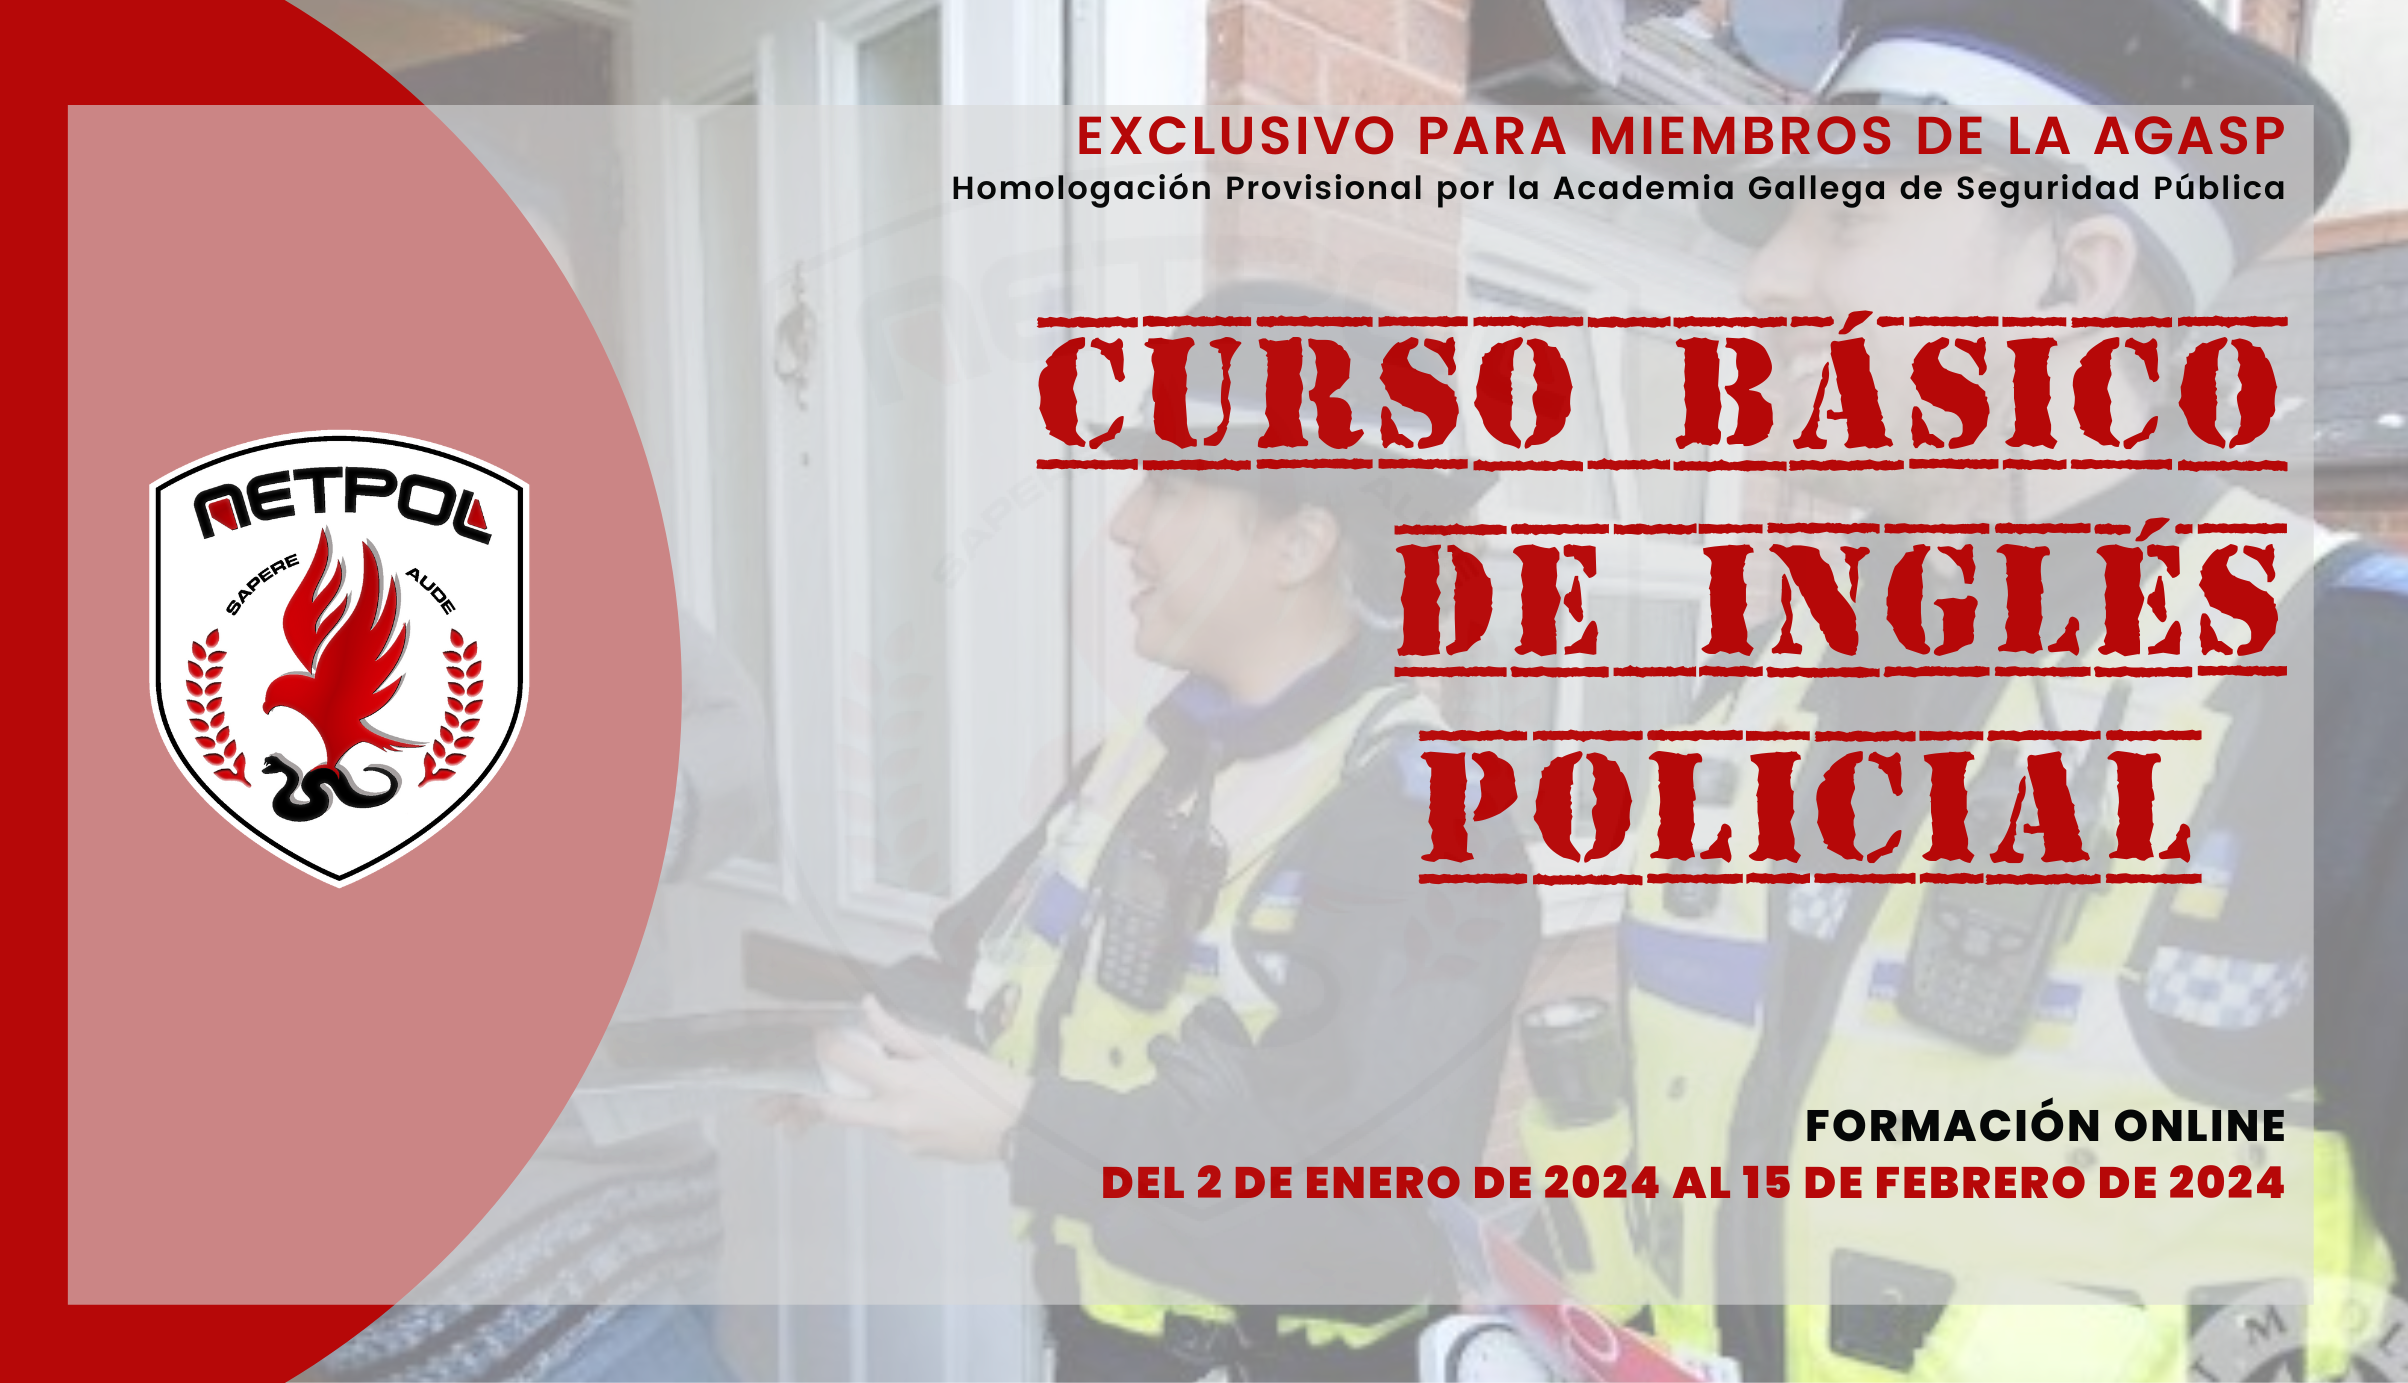 CURSO BÁSICO DE INGLÉS POLICIAL.